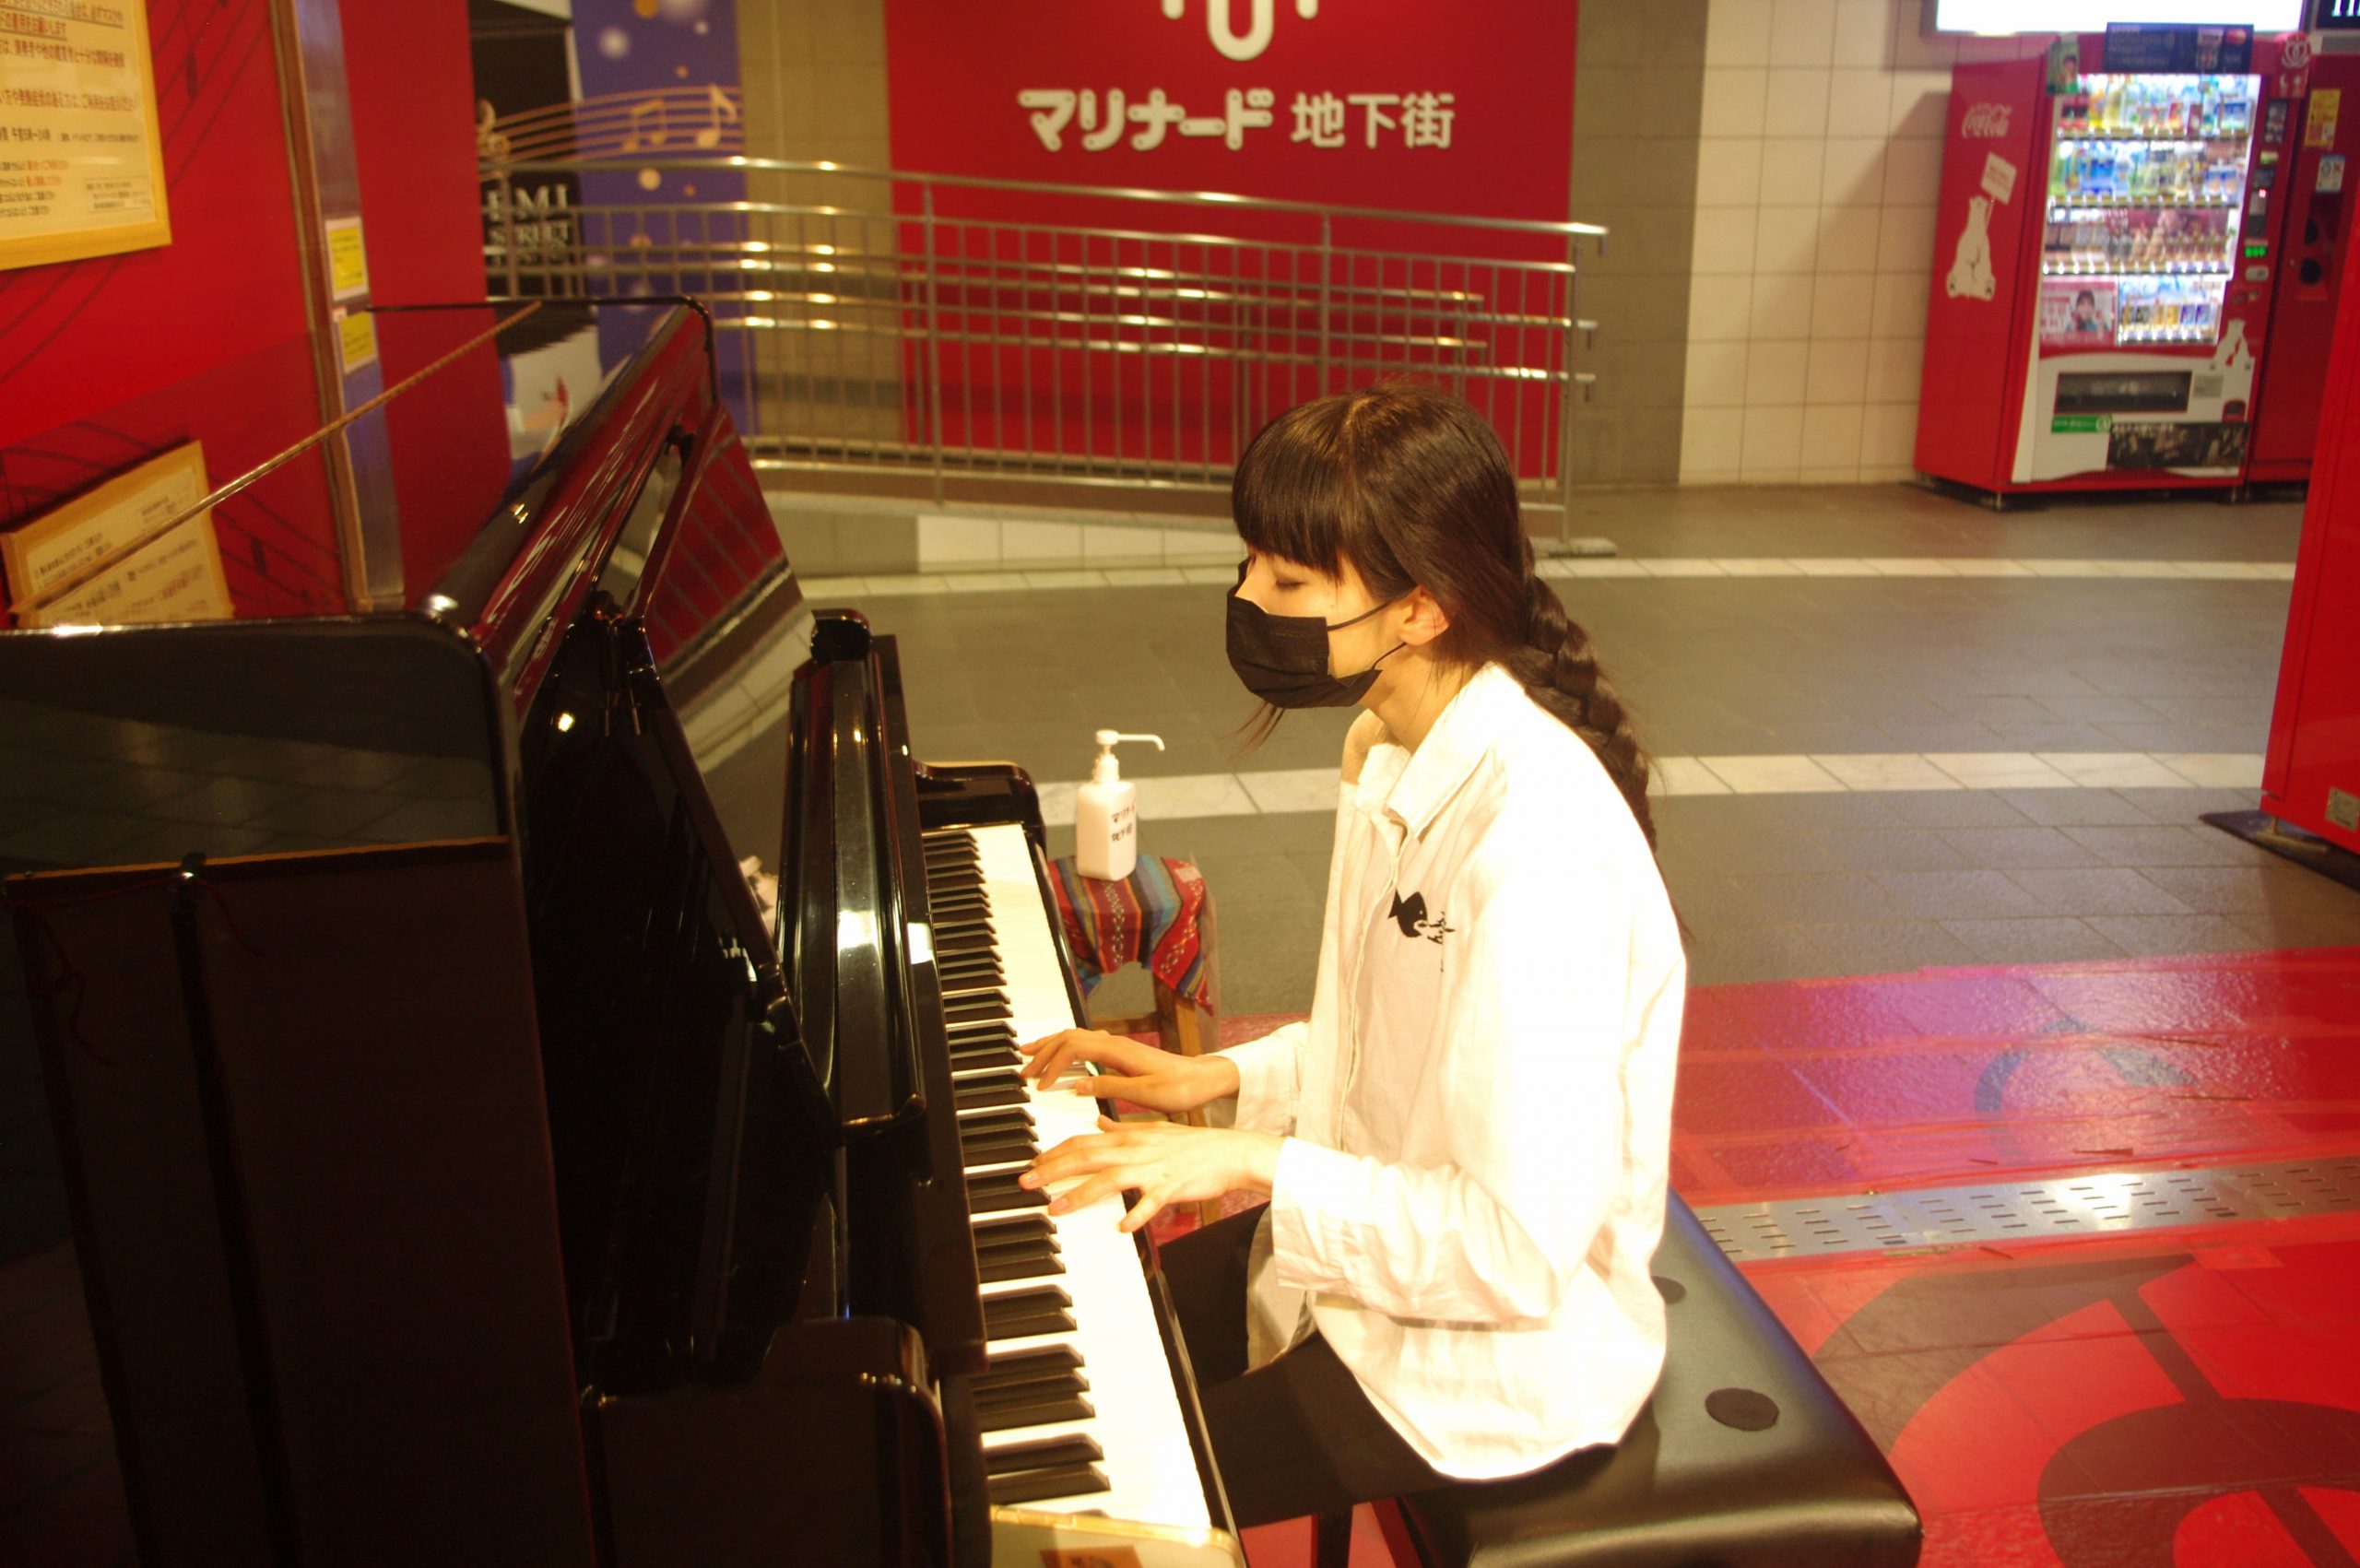 関内にあるマリナード地下街には坂本櫻が奏でるピアノが響いた